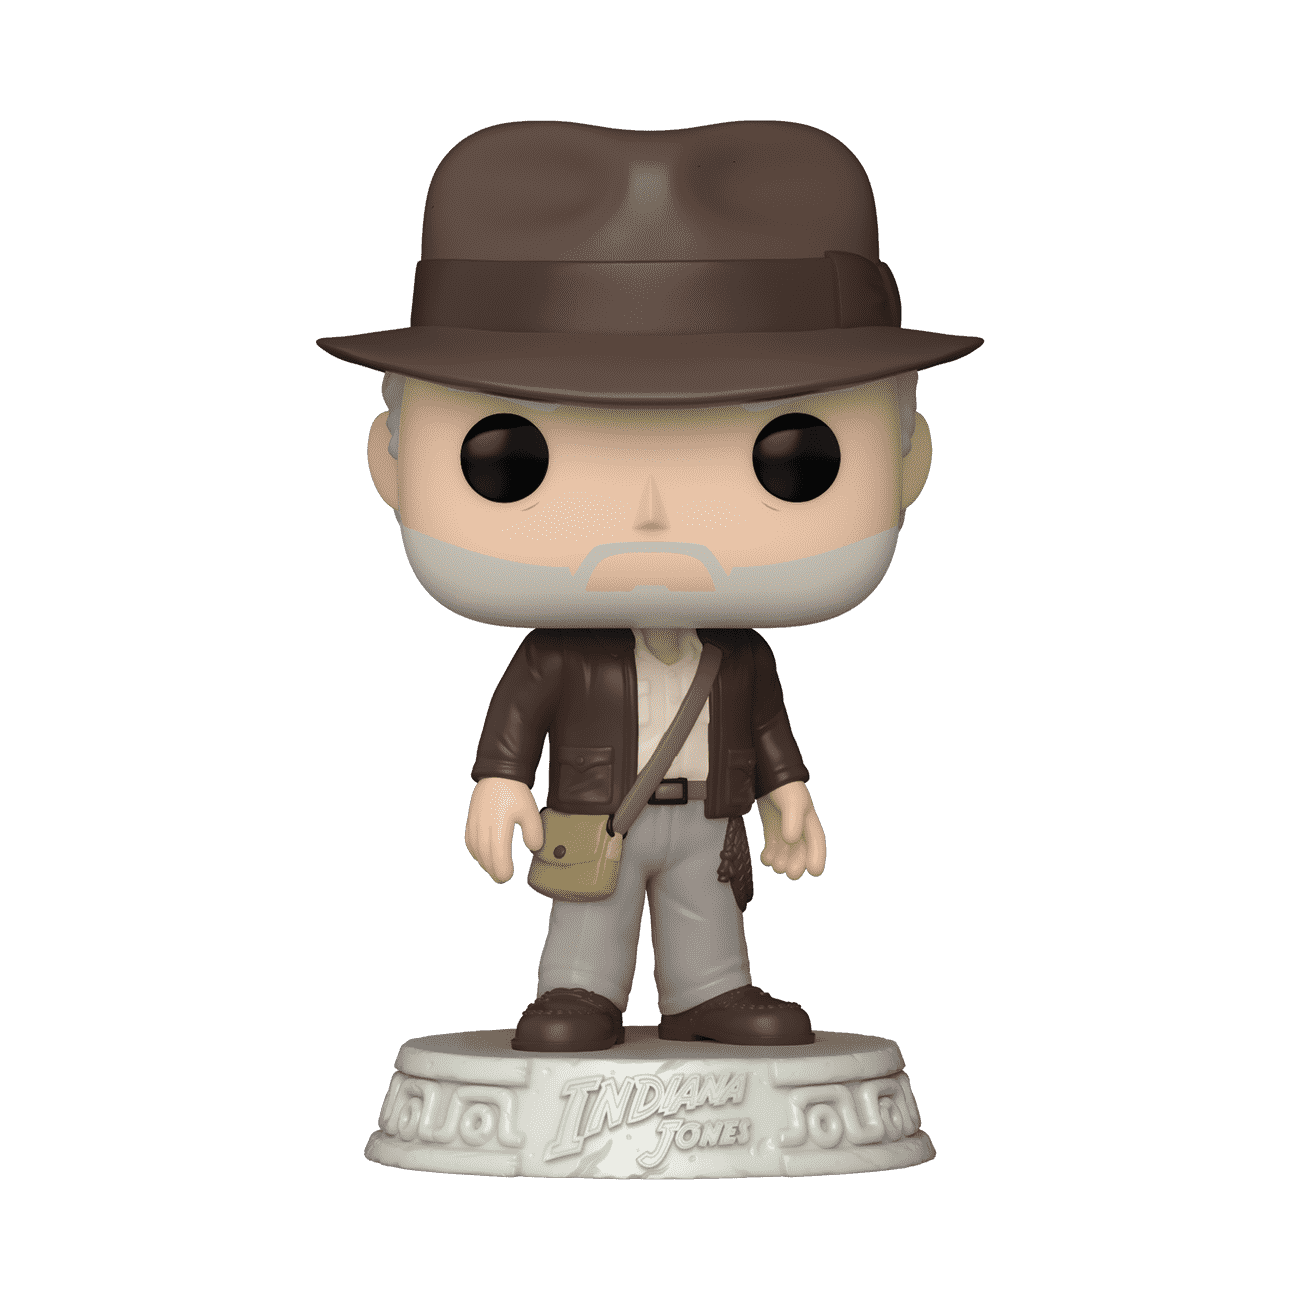 Buy Pop! Indiana Jones at Funko.